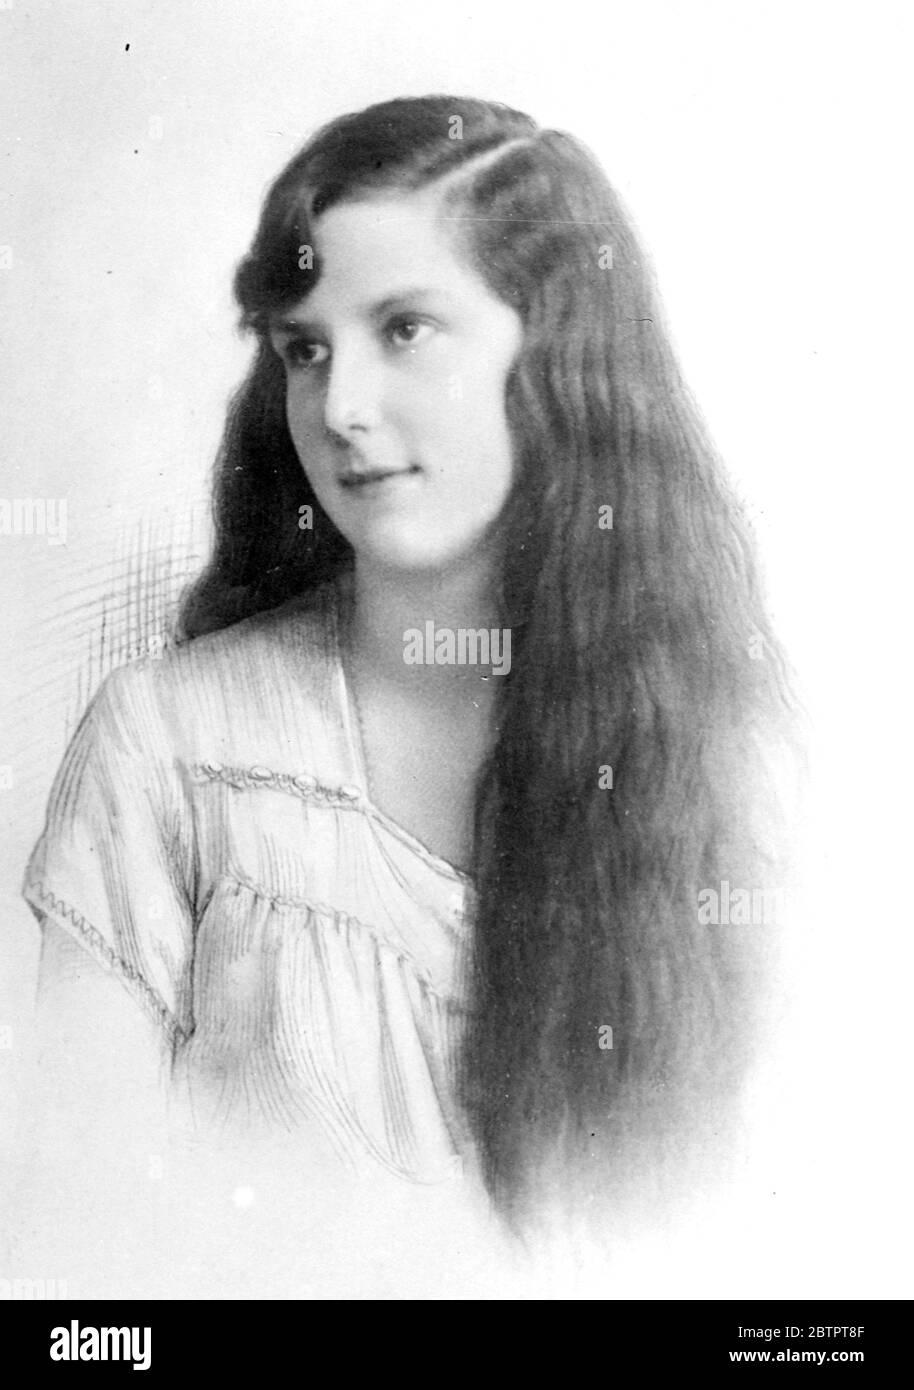 La sua promessa. La regina Ivanka di Bulgaria, secondo un telegramma di Roma, ha promesso a re Boris di permettere ai suoi capelli di crescere secondo la consuetudine bulgara. Novembre 1930 Foto Stock